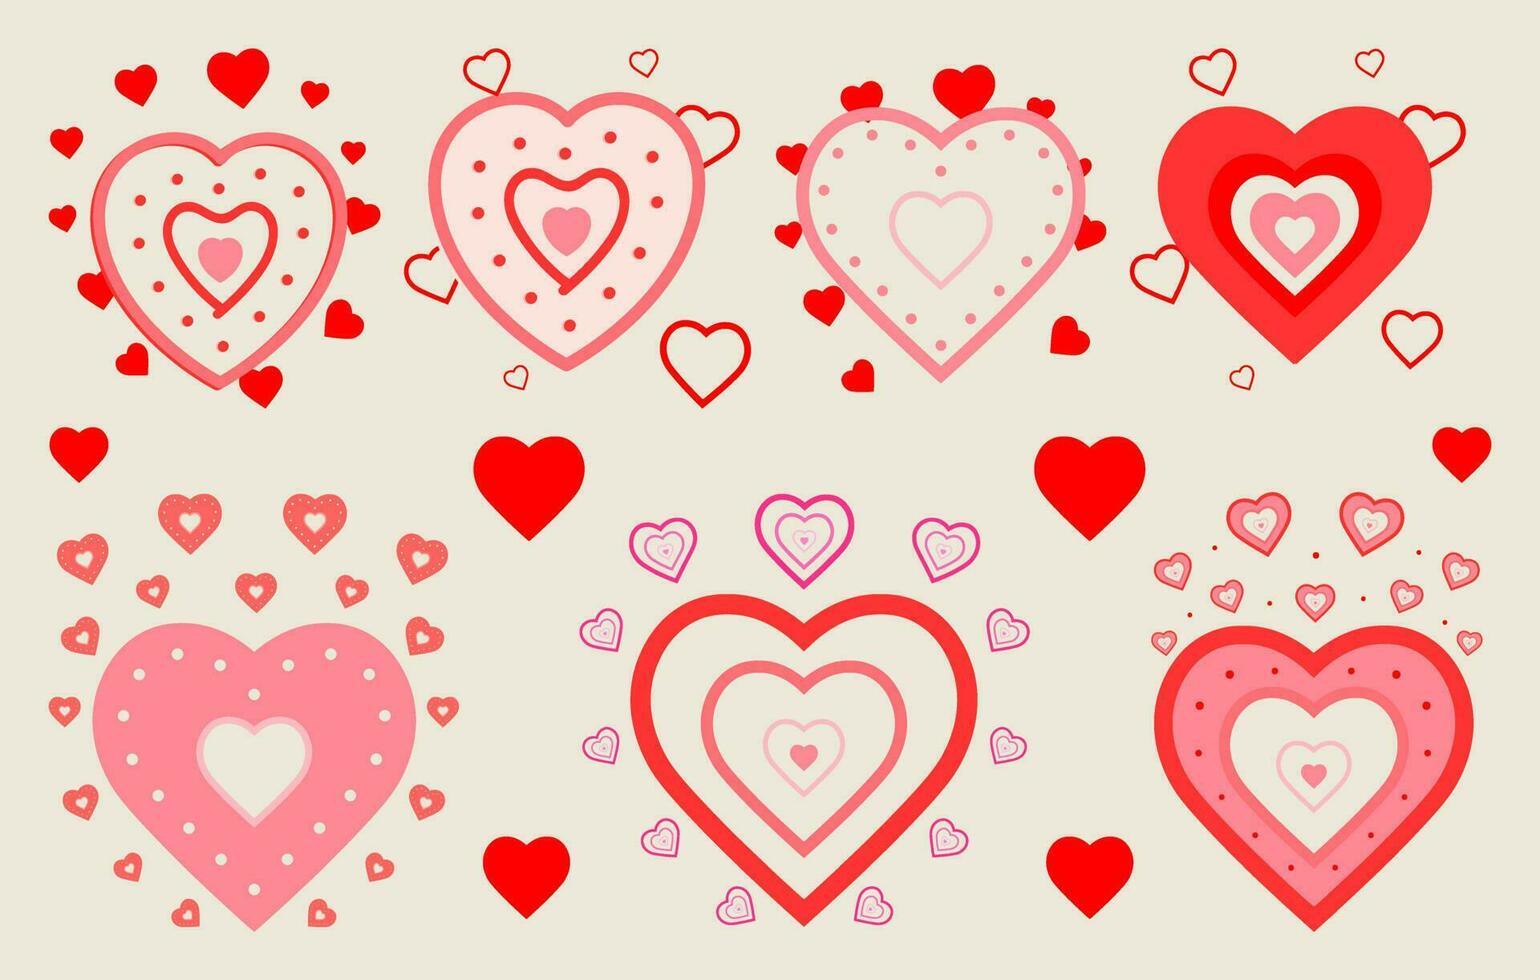 élément de la Saint-Valentin gratuit, lot de vecteurs d'amour gratuit, modèle de vecteur d'amour, clipart coeur, dessin d'amour, jeu de coeurs